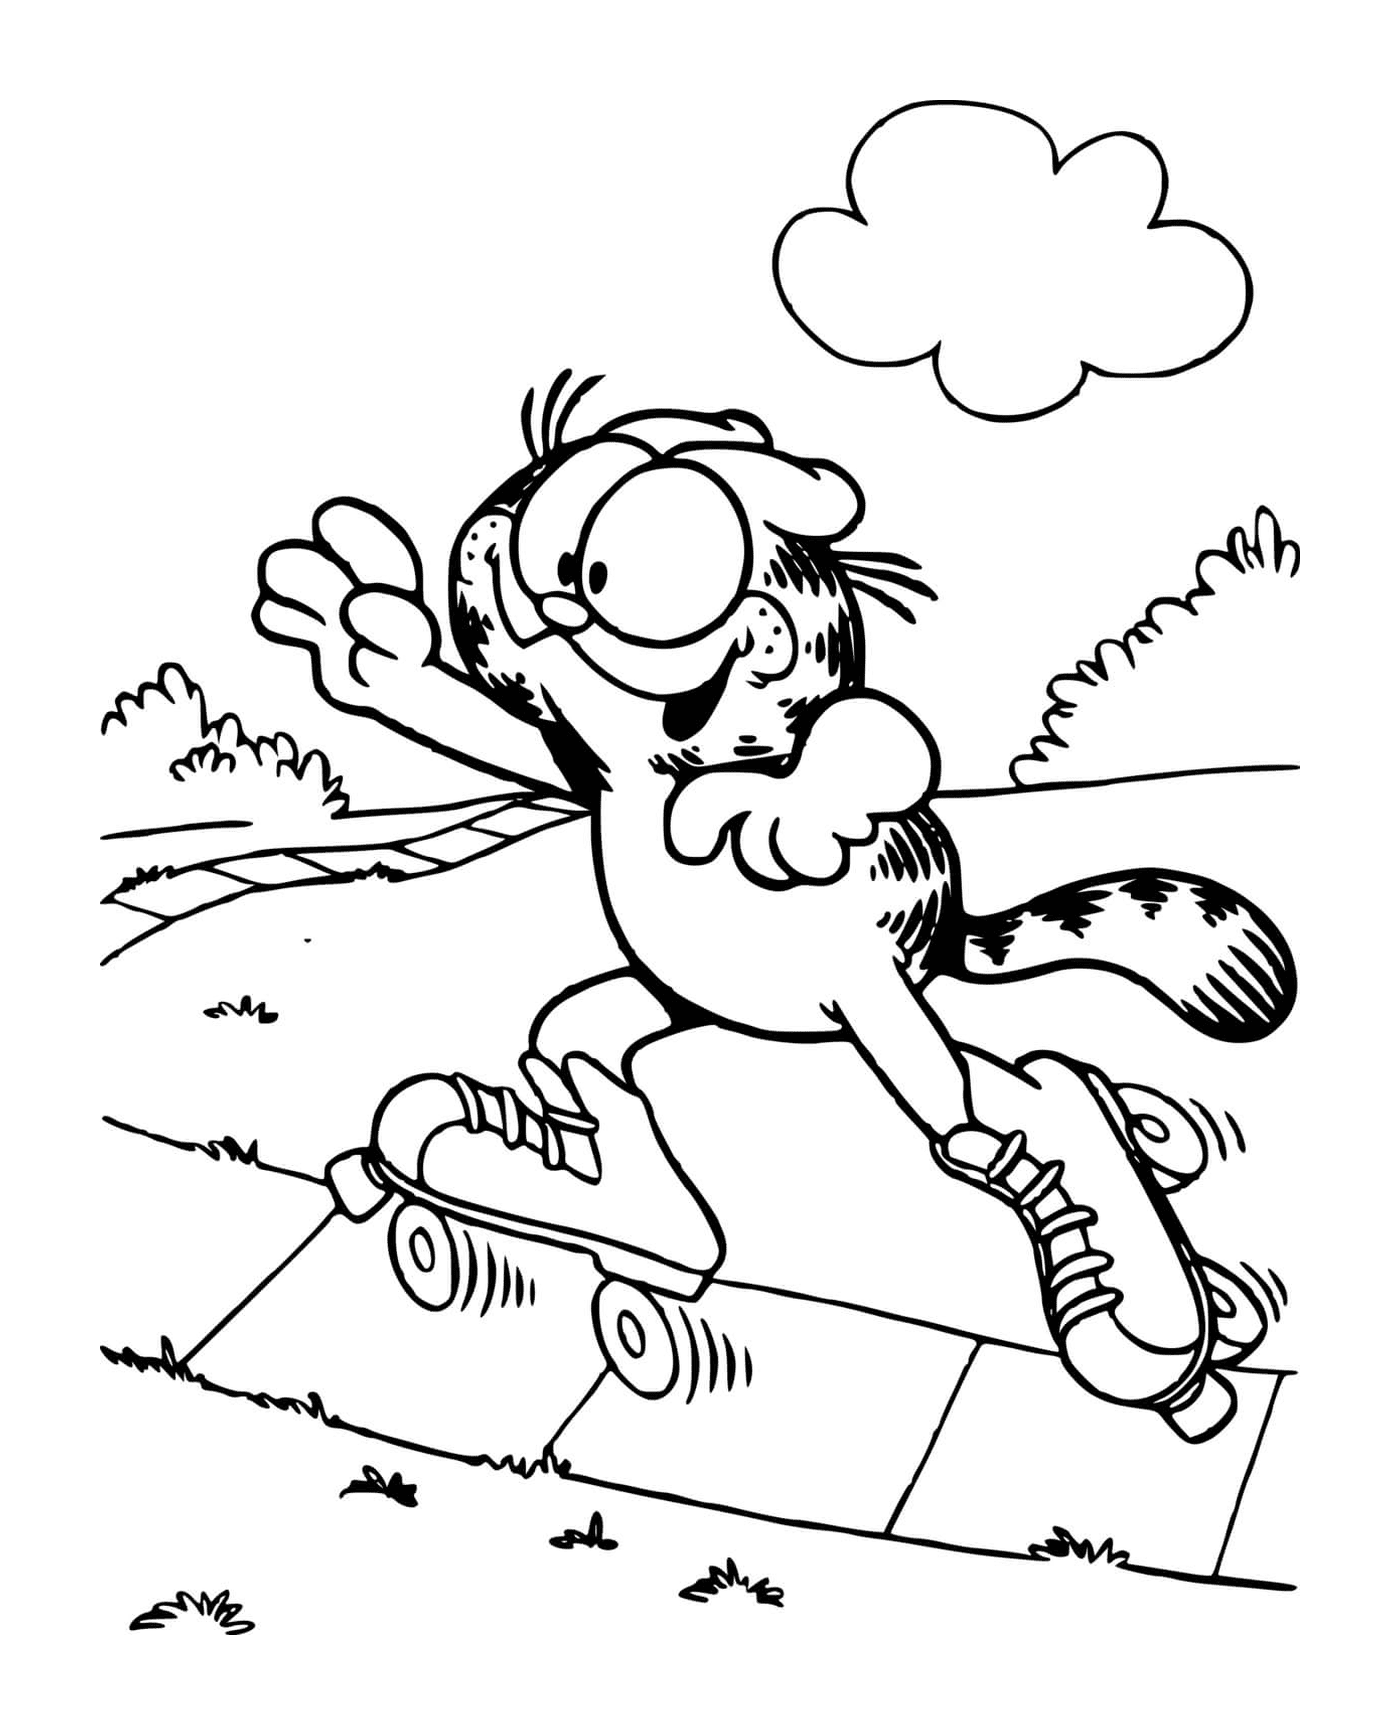 Garfield fait du patin a roulettes